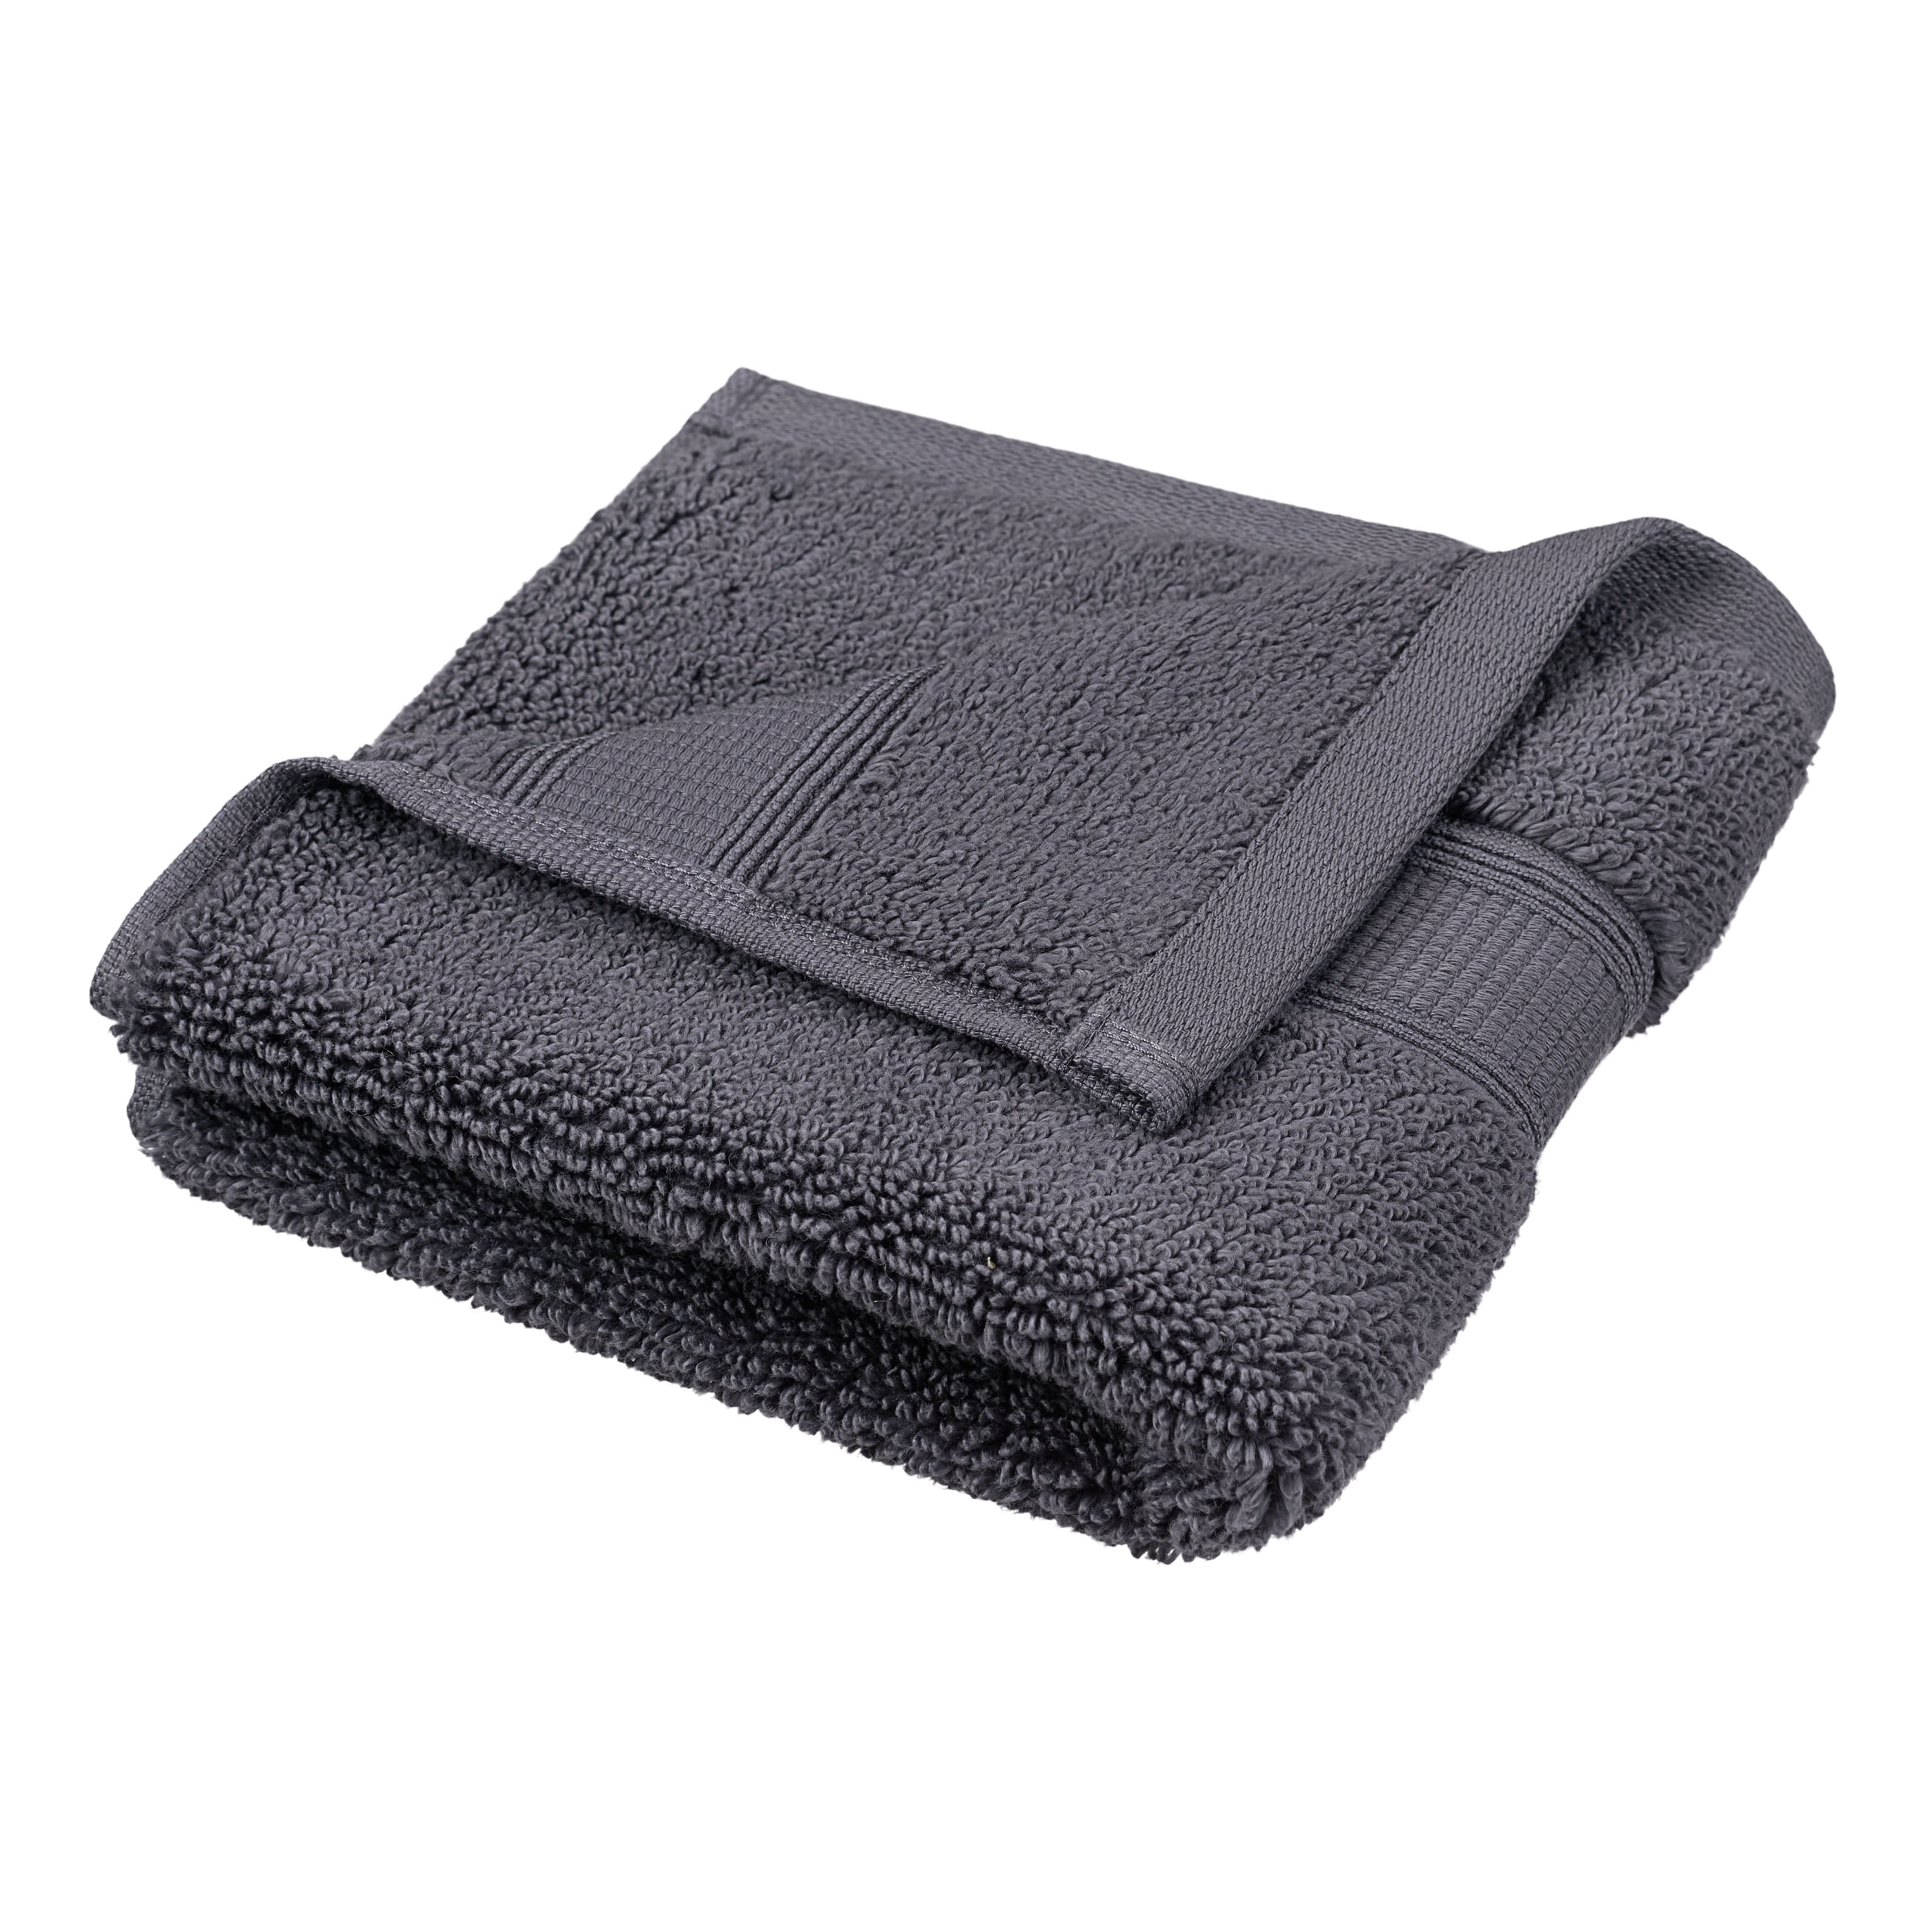 Pousada Waffle Retro Design Egyptian Cotton Towels - 990 Black